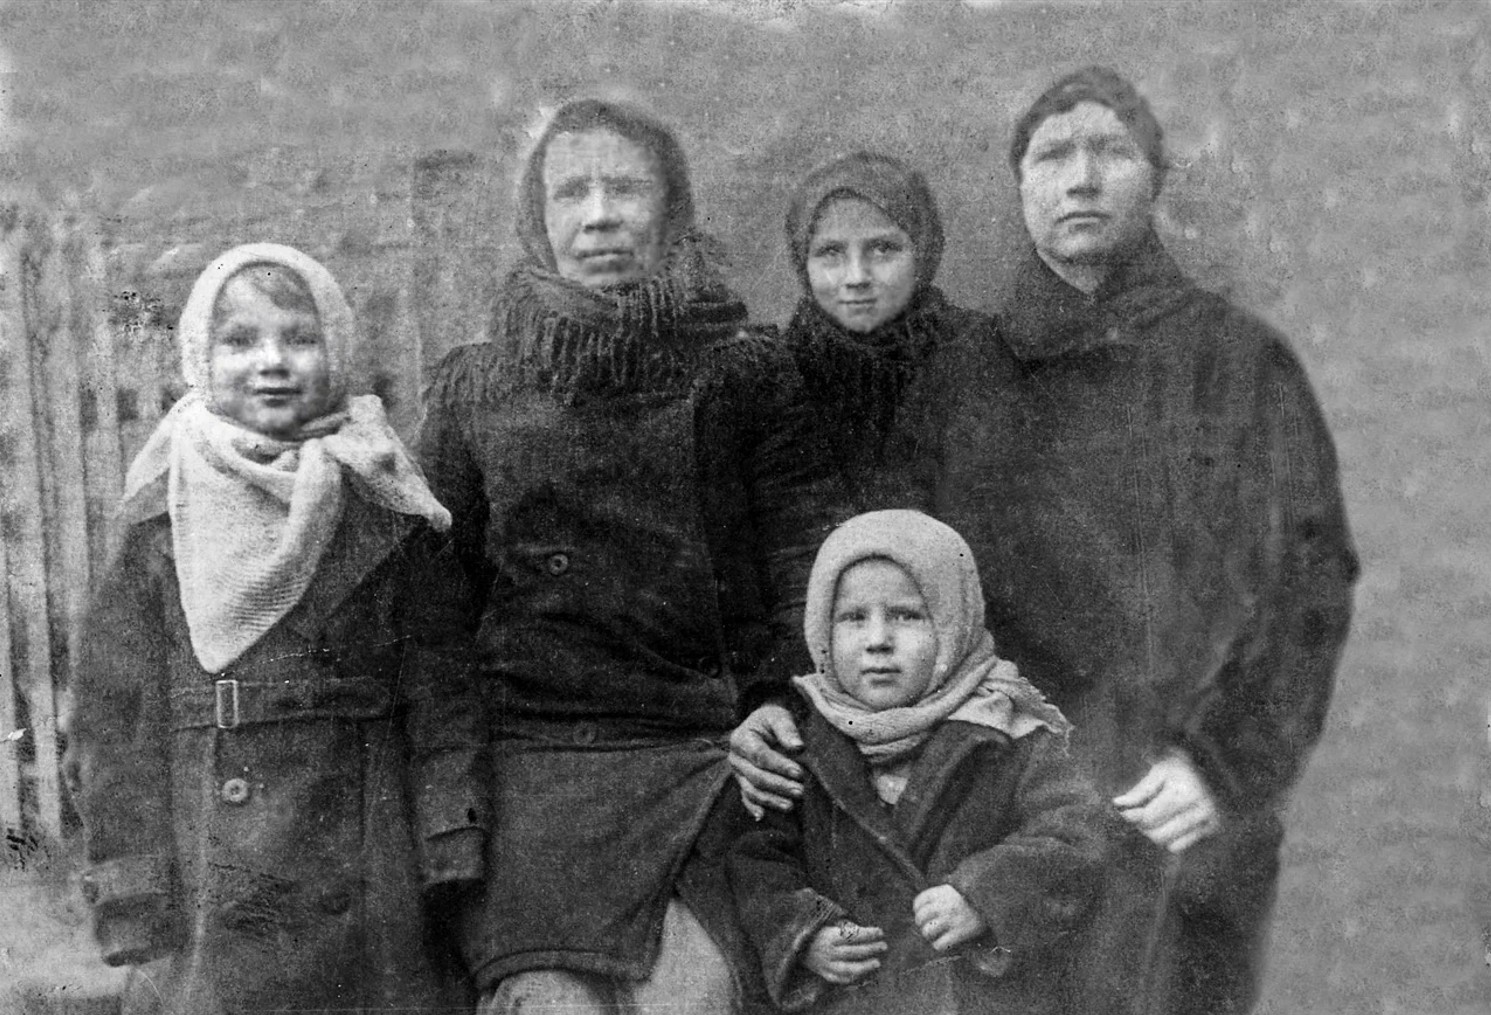 До сентября 1943 года маленькая Клава (на снимке справа) находилась в лагере смерти. Она ничего не помнит о жизни за колючей проволокой, и это к лучшему. Детская психика просто заблокировала страшные воспоминания 